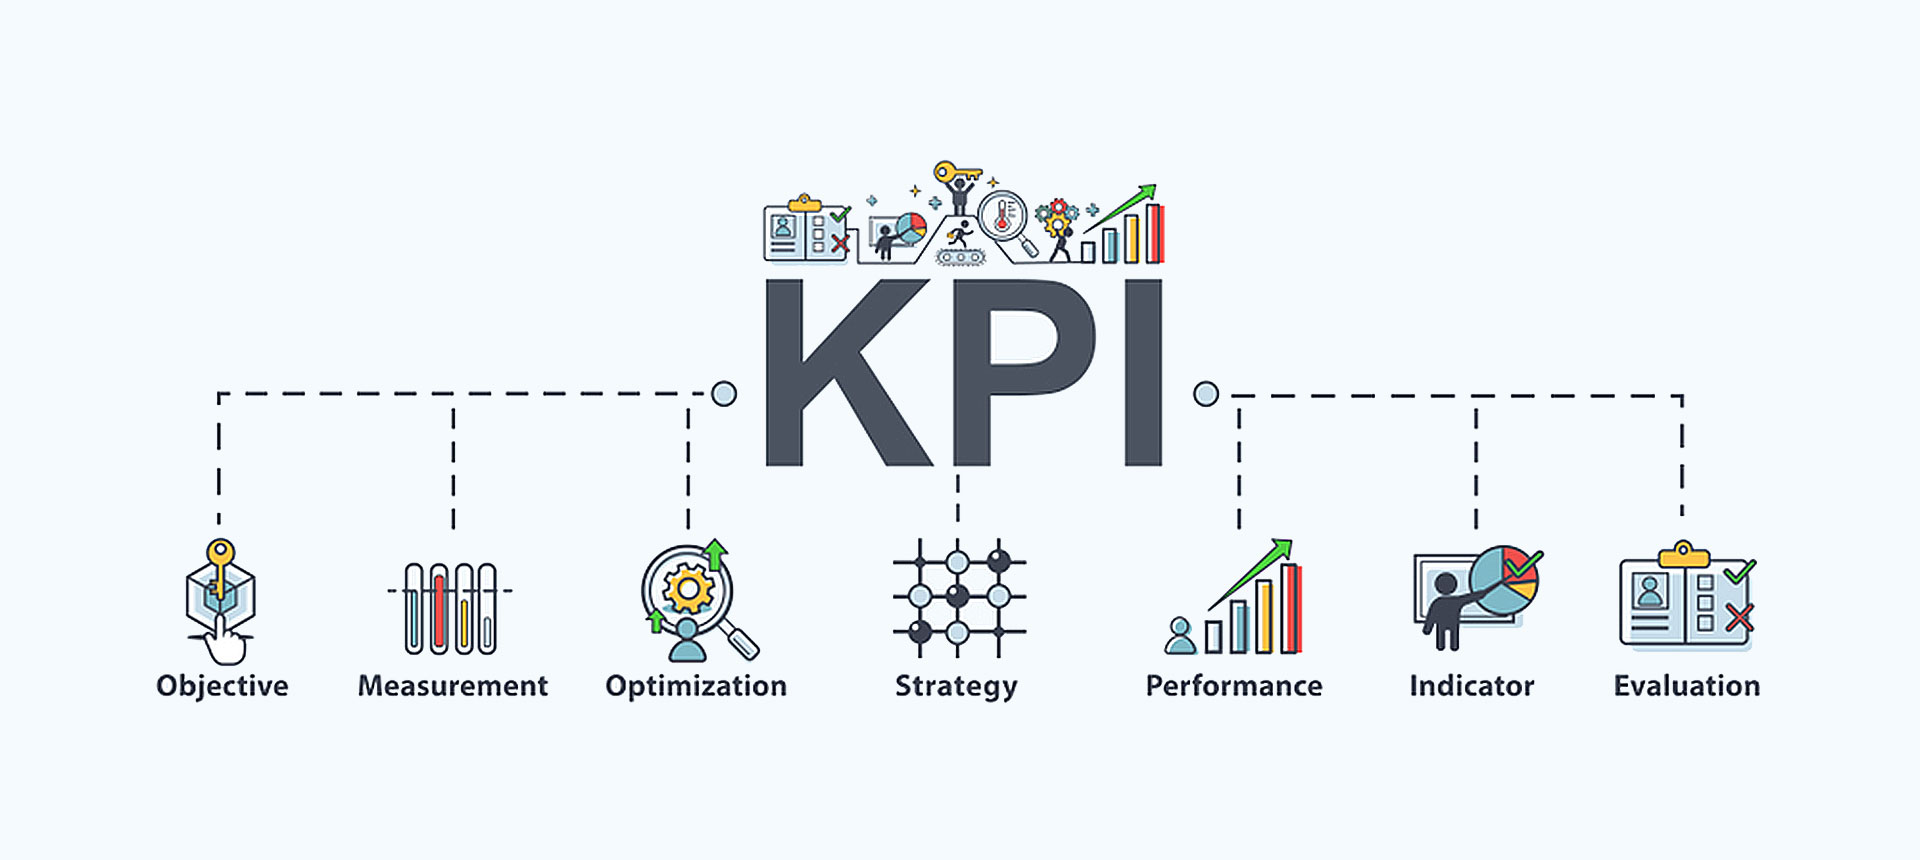 15 شاخص کلیدی عملکرد (KPIs ) برای کسب و کارها